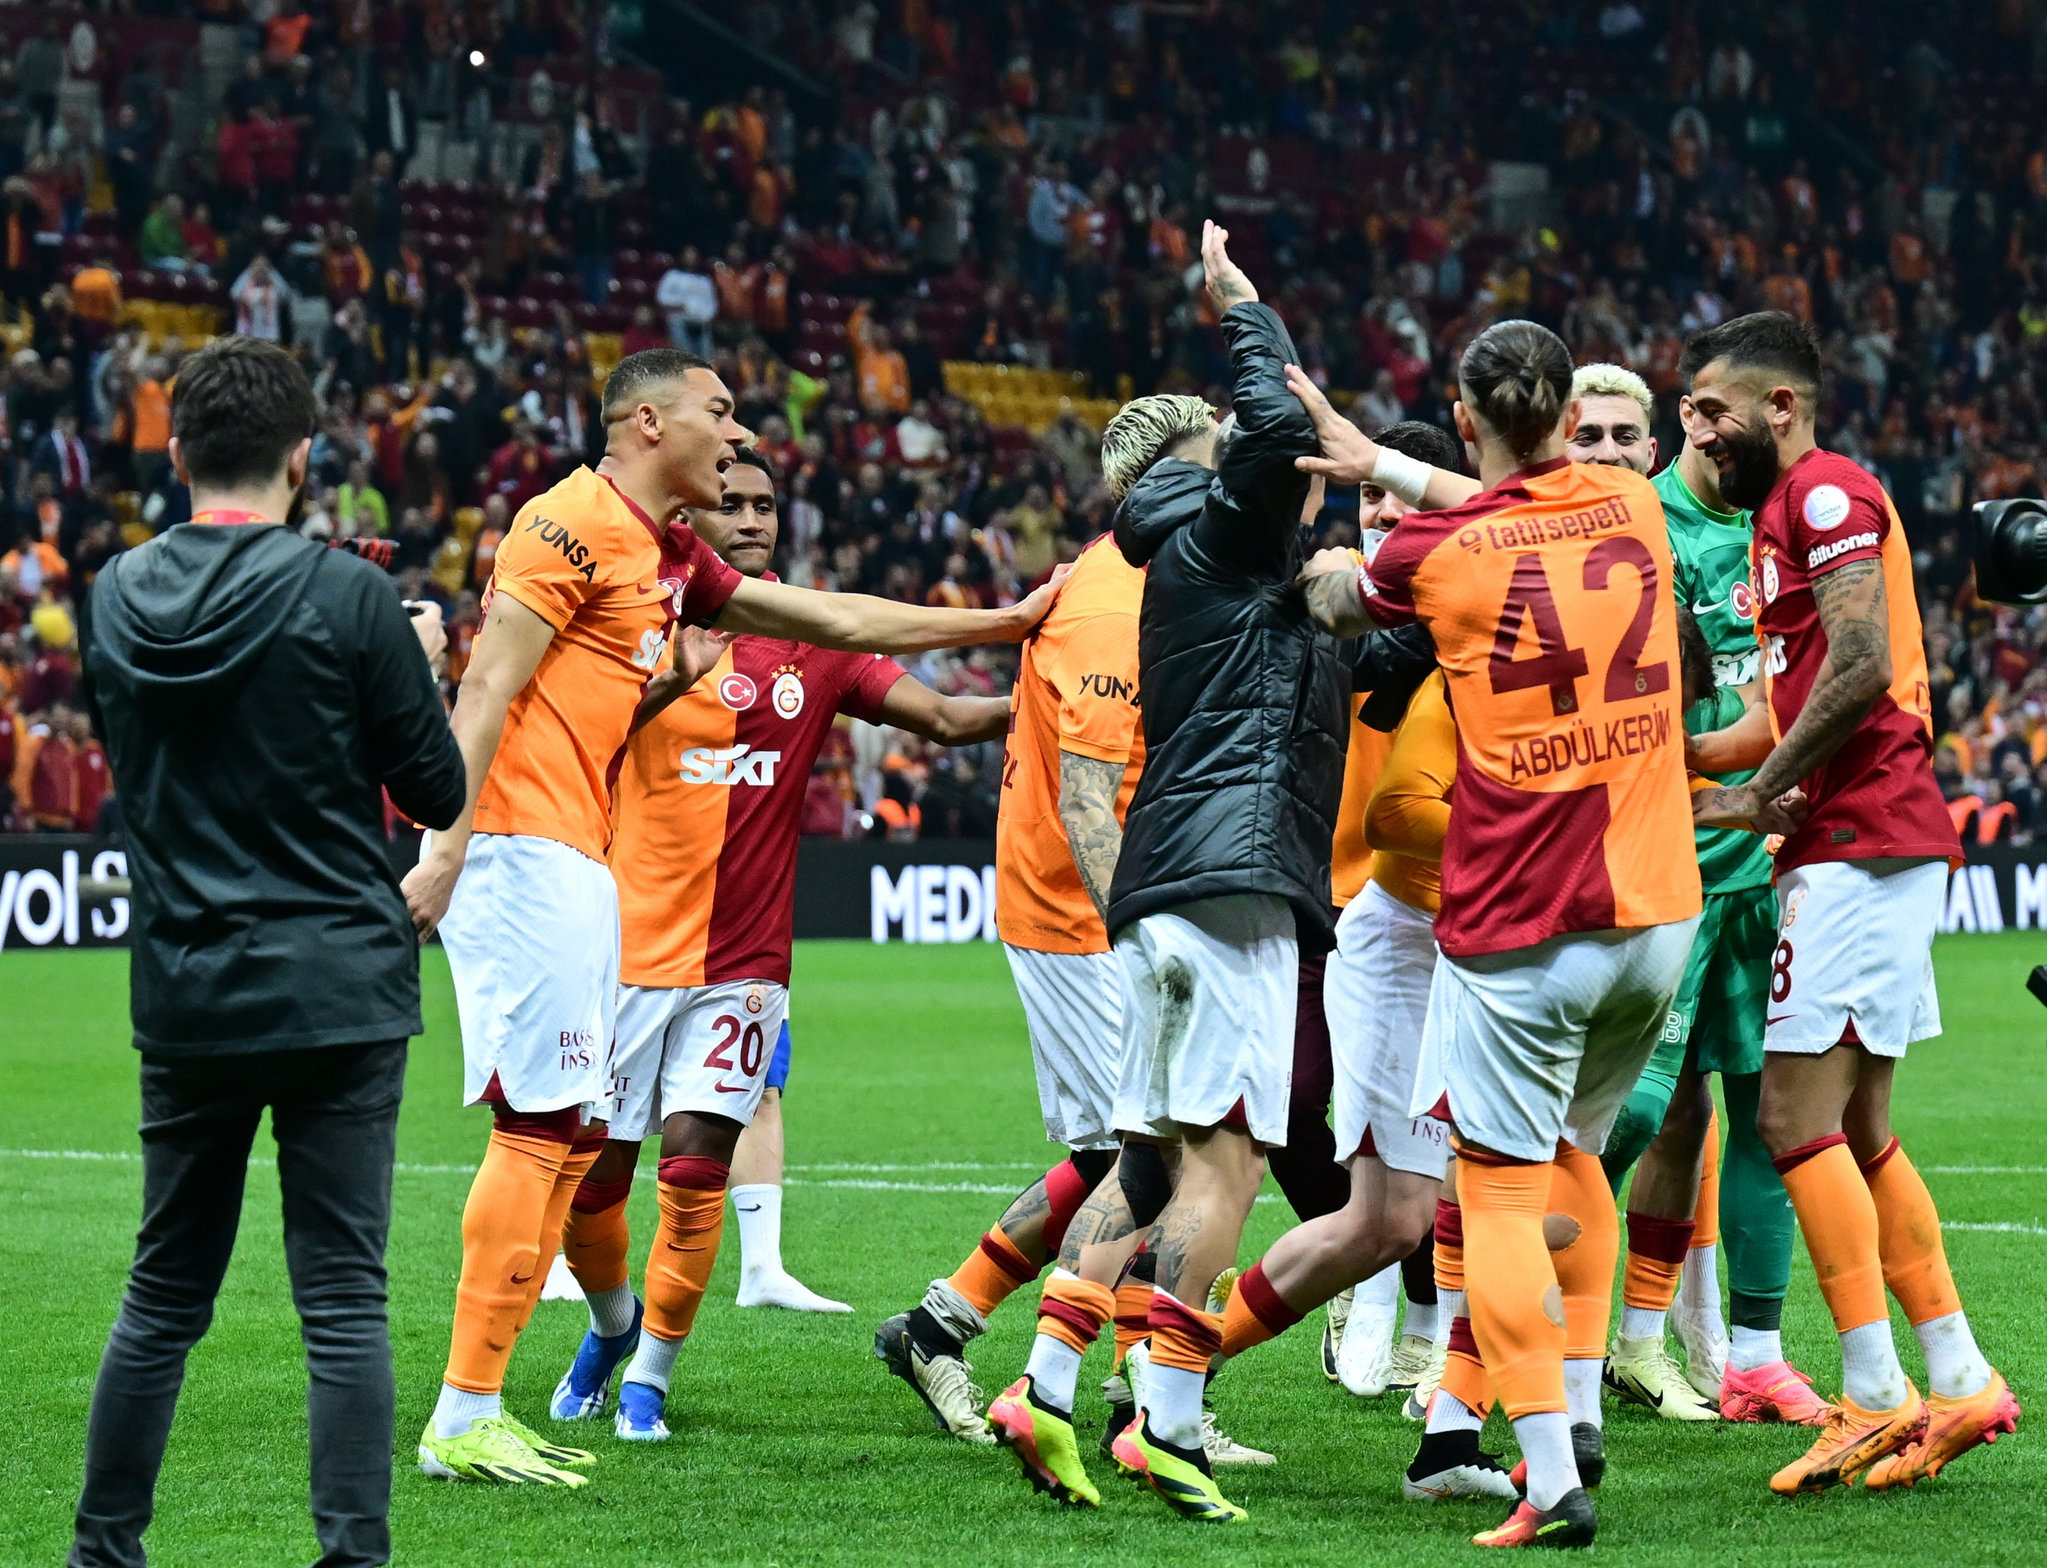 TRANSFER HABERİ - Serie A şampiyonu oldu! Inter’in yıldızı Galatasaray’a geliyor